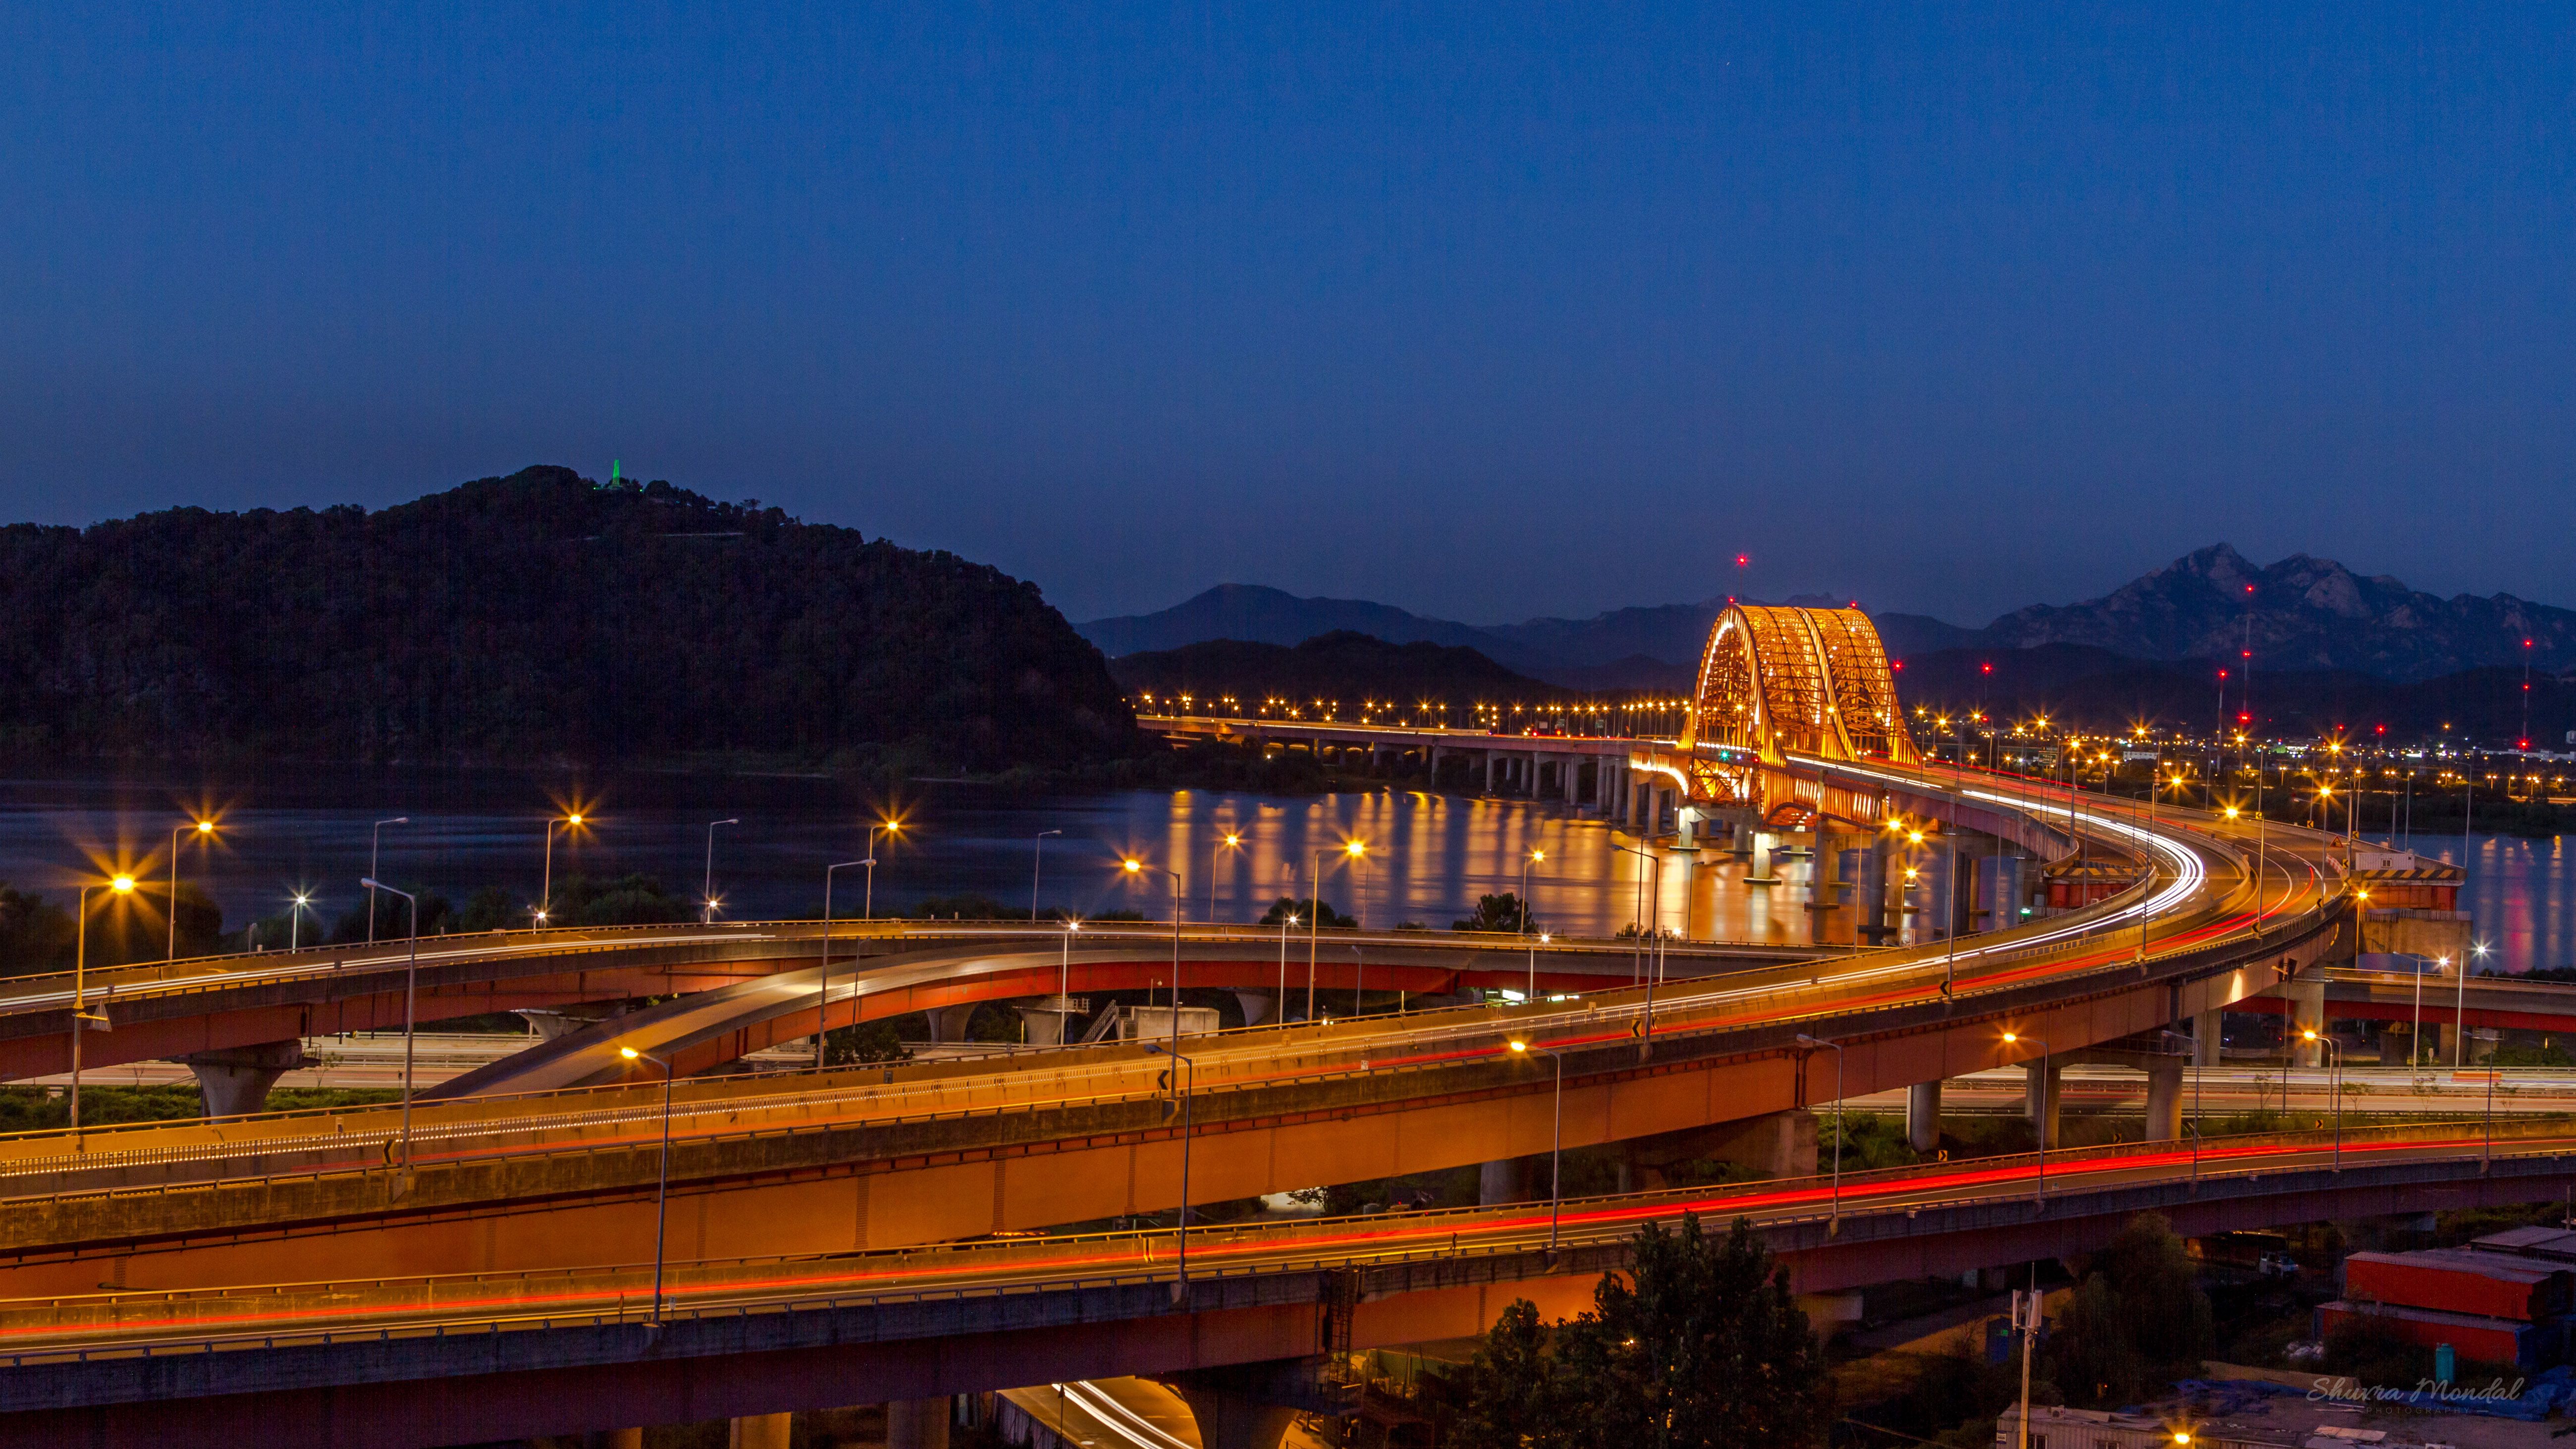 Banghwa Bridge Of The Han River In South Korea Connecting Gangseo Gu In Seoul And Goyang In The Province Of Gyeonggi Desktop HD Wallpaper 5200x3250, Wallpaper13.com